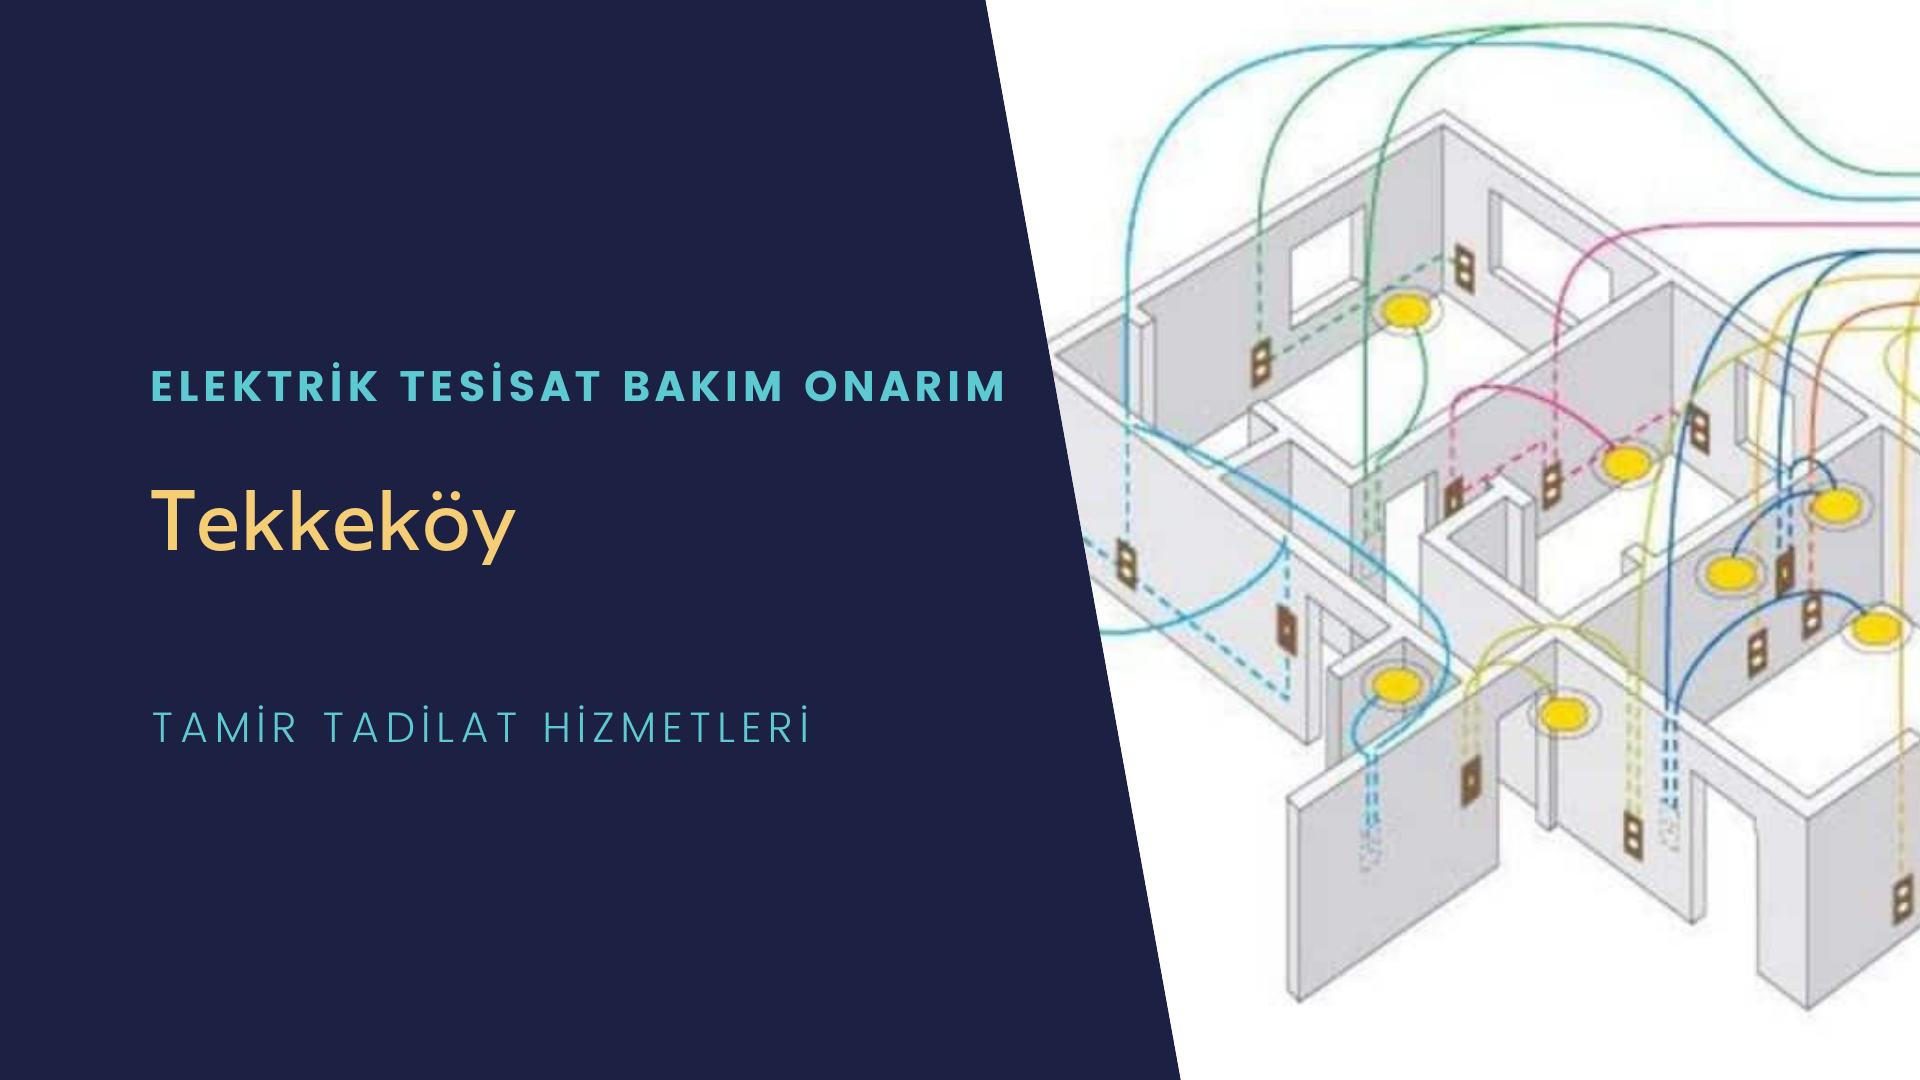 Tekkeköy'de elektrik tesisatı ustalarımı arıyorsunuz doğru adrestenizi Tekkeköy elektrik tesisatı ustalarımız 7/24 sizlere hizmet vermekten mutluluk duyar.